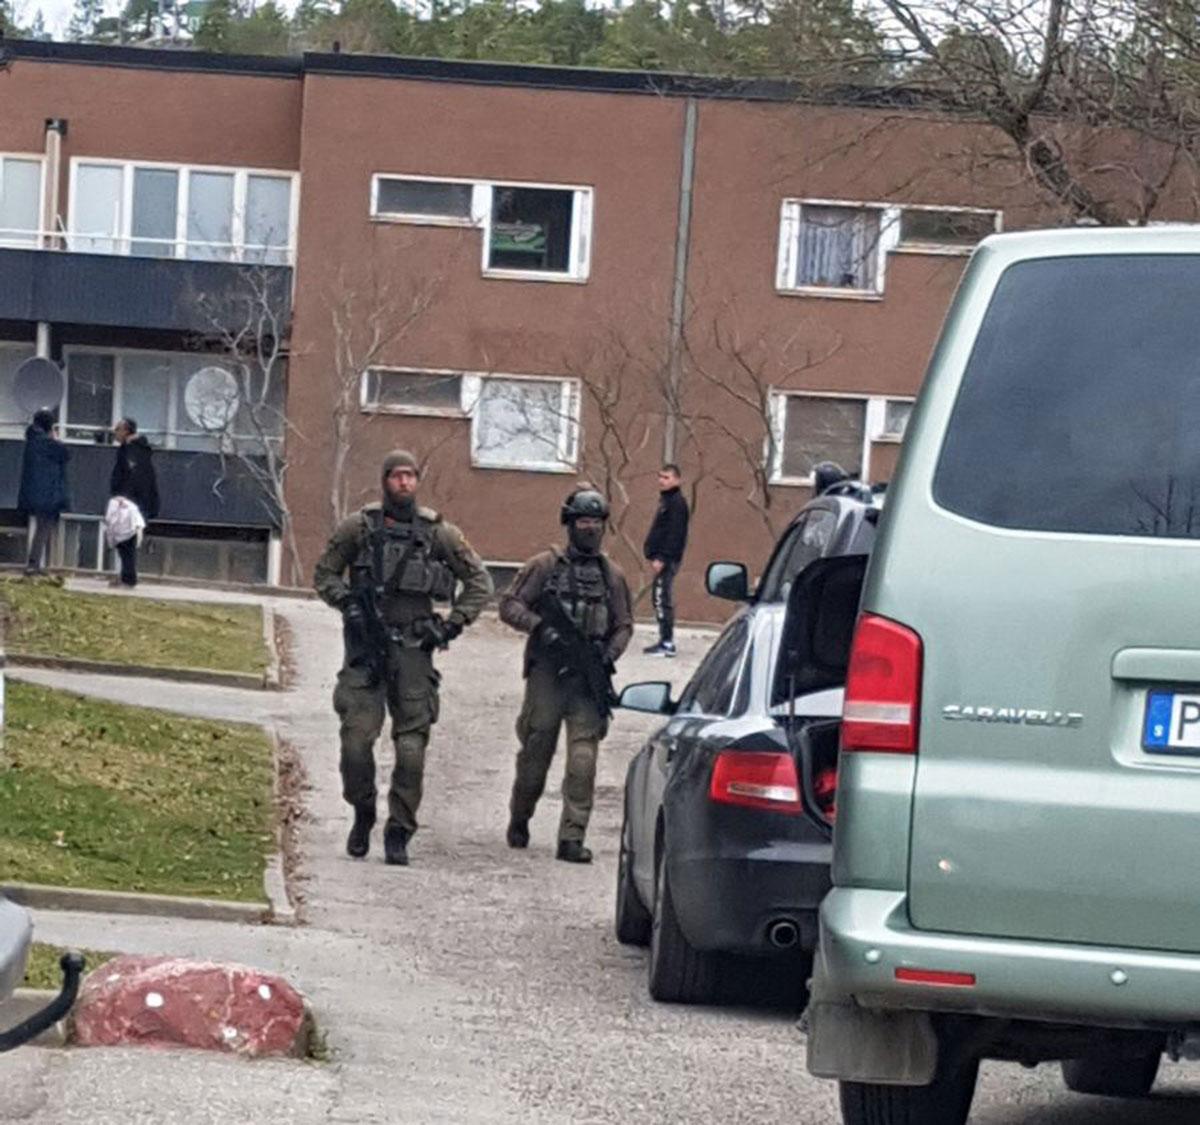 Polis vid tillslaget i Vårberg.